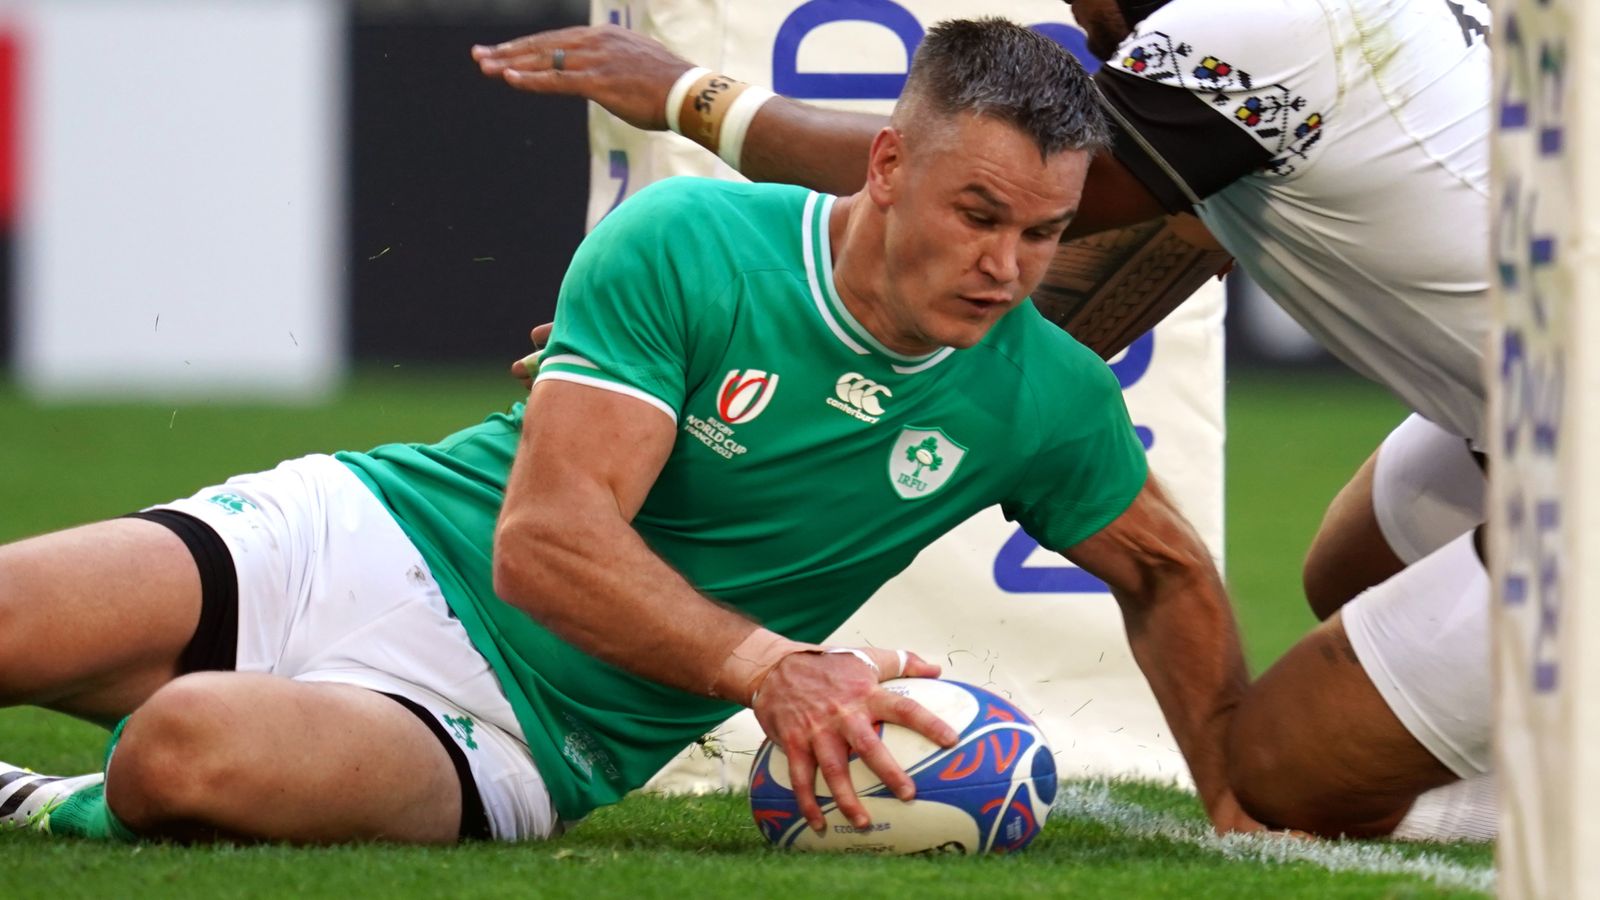 Irlanda 82-8 România: Vedetele Johnny Sexton revin în deschiderea Cupei Mondiale de rugby a irlandezilor |  Știri Rugby Union